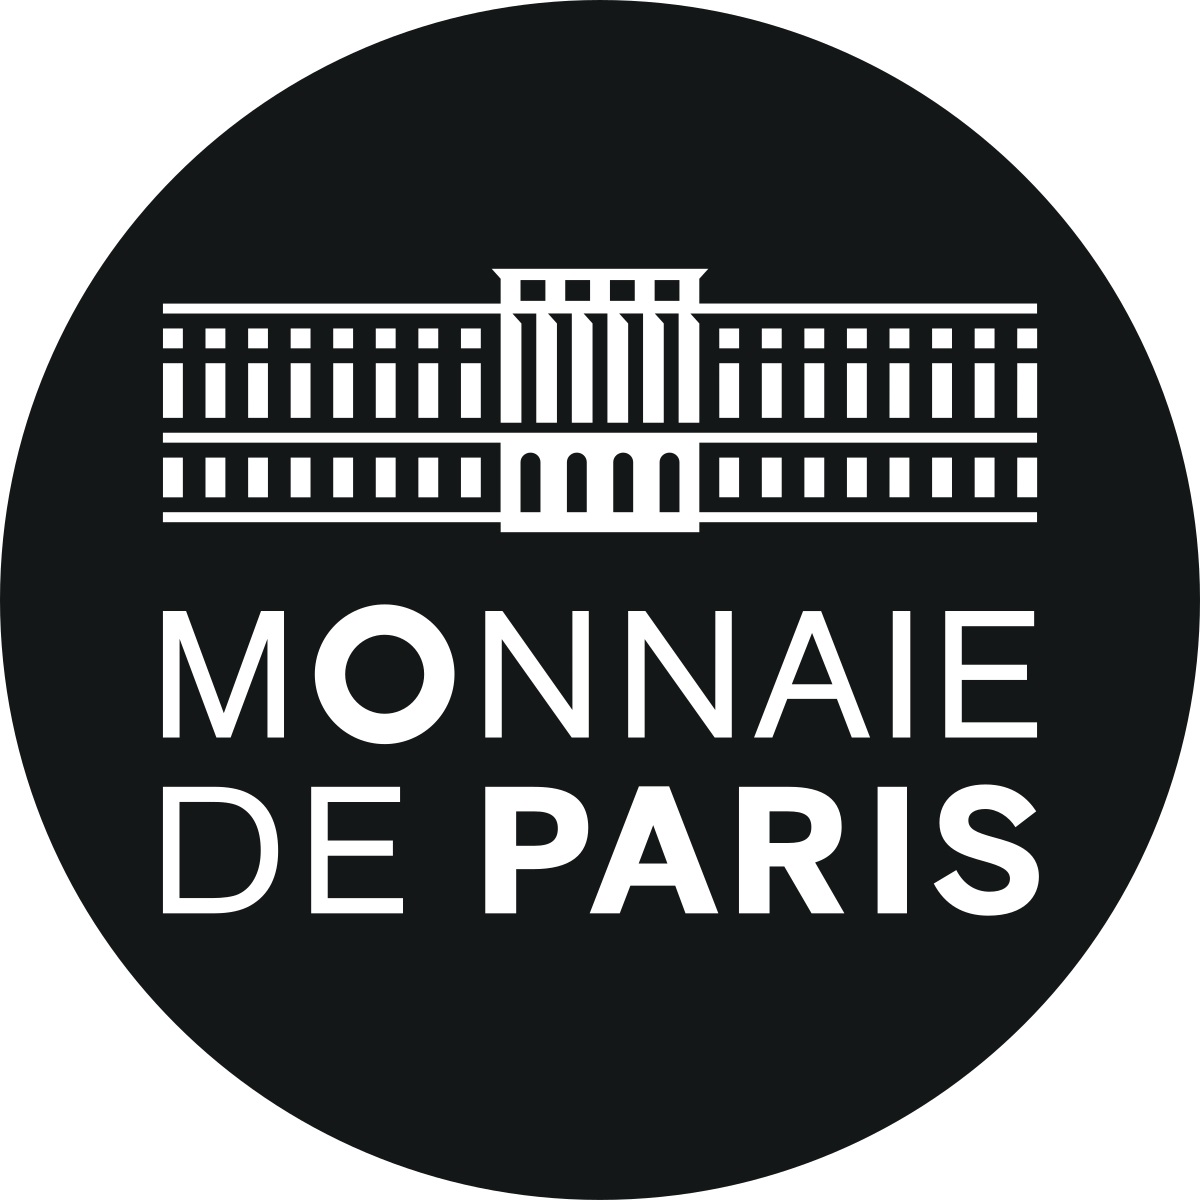 Monnaie de Paris (shop illustration) (logo) (zoom)